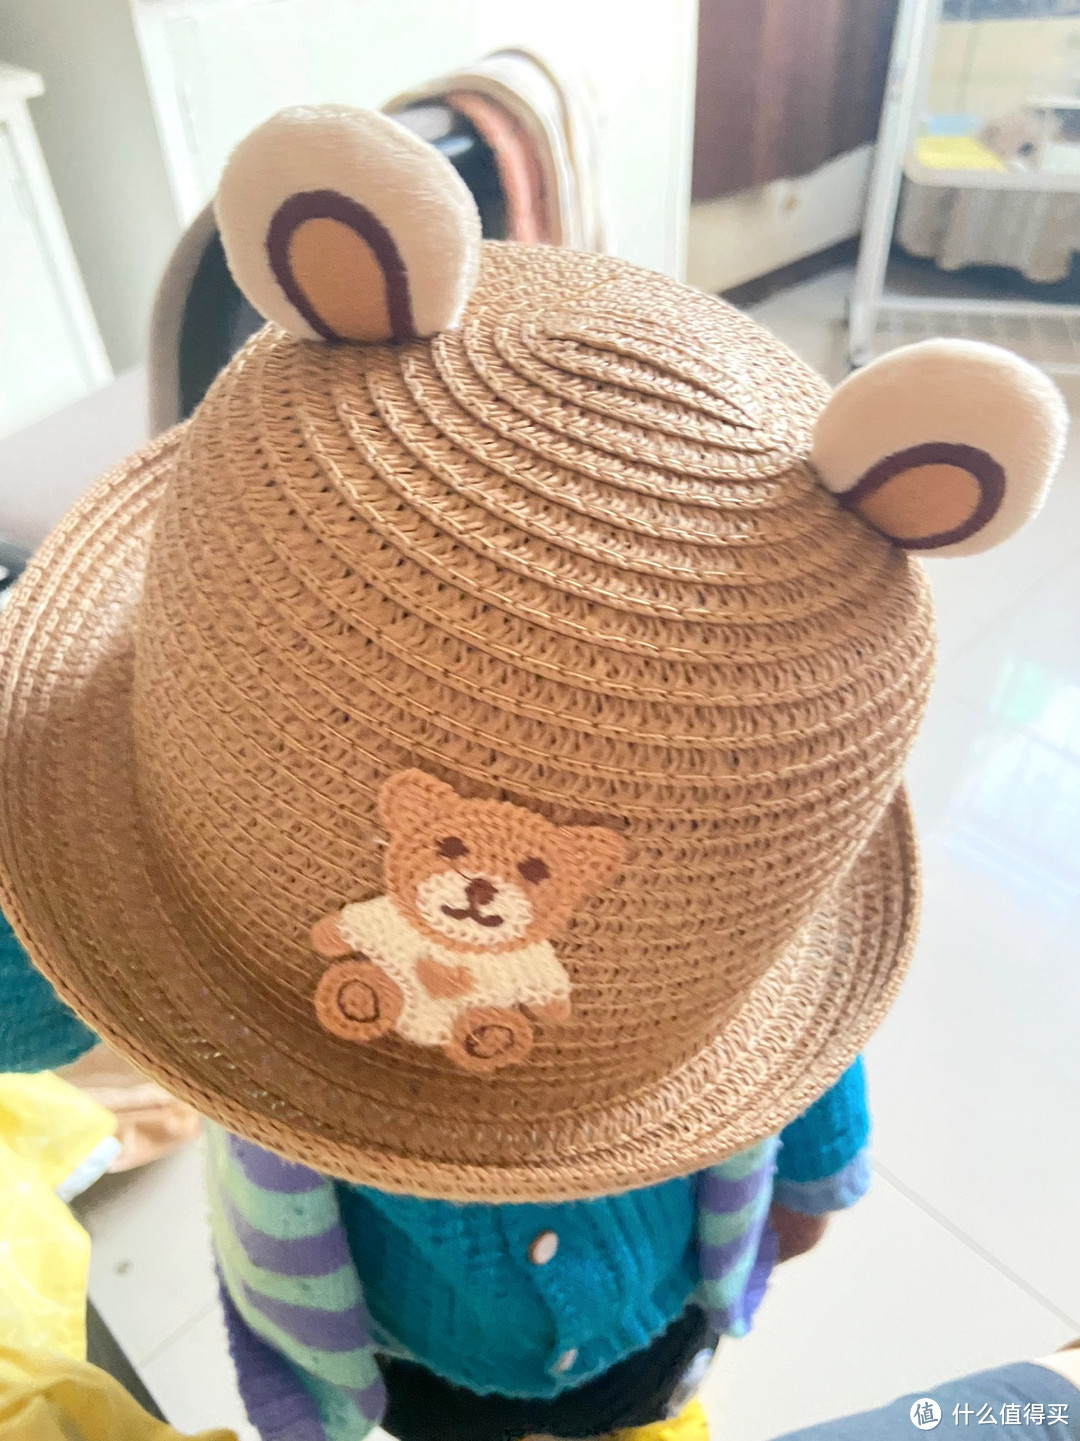 自从给孩子买了这个渔夫帽子，带孩子出去玩的时候再也不怕孩子被晒了